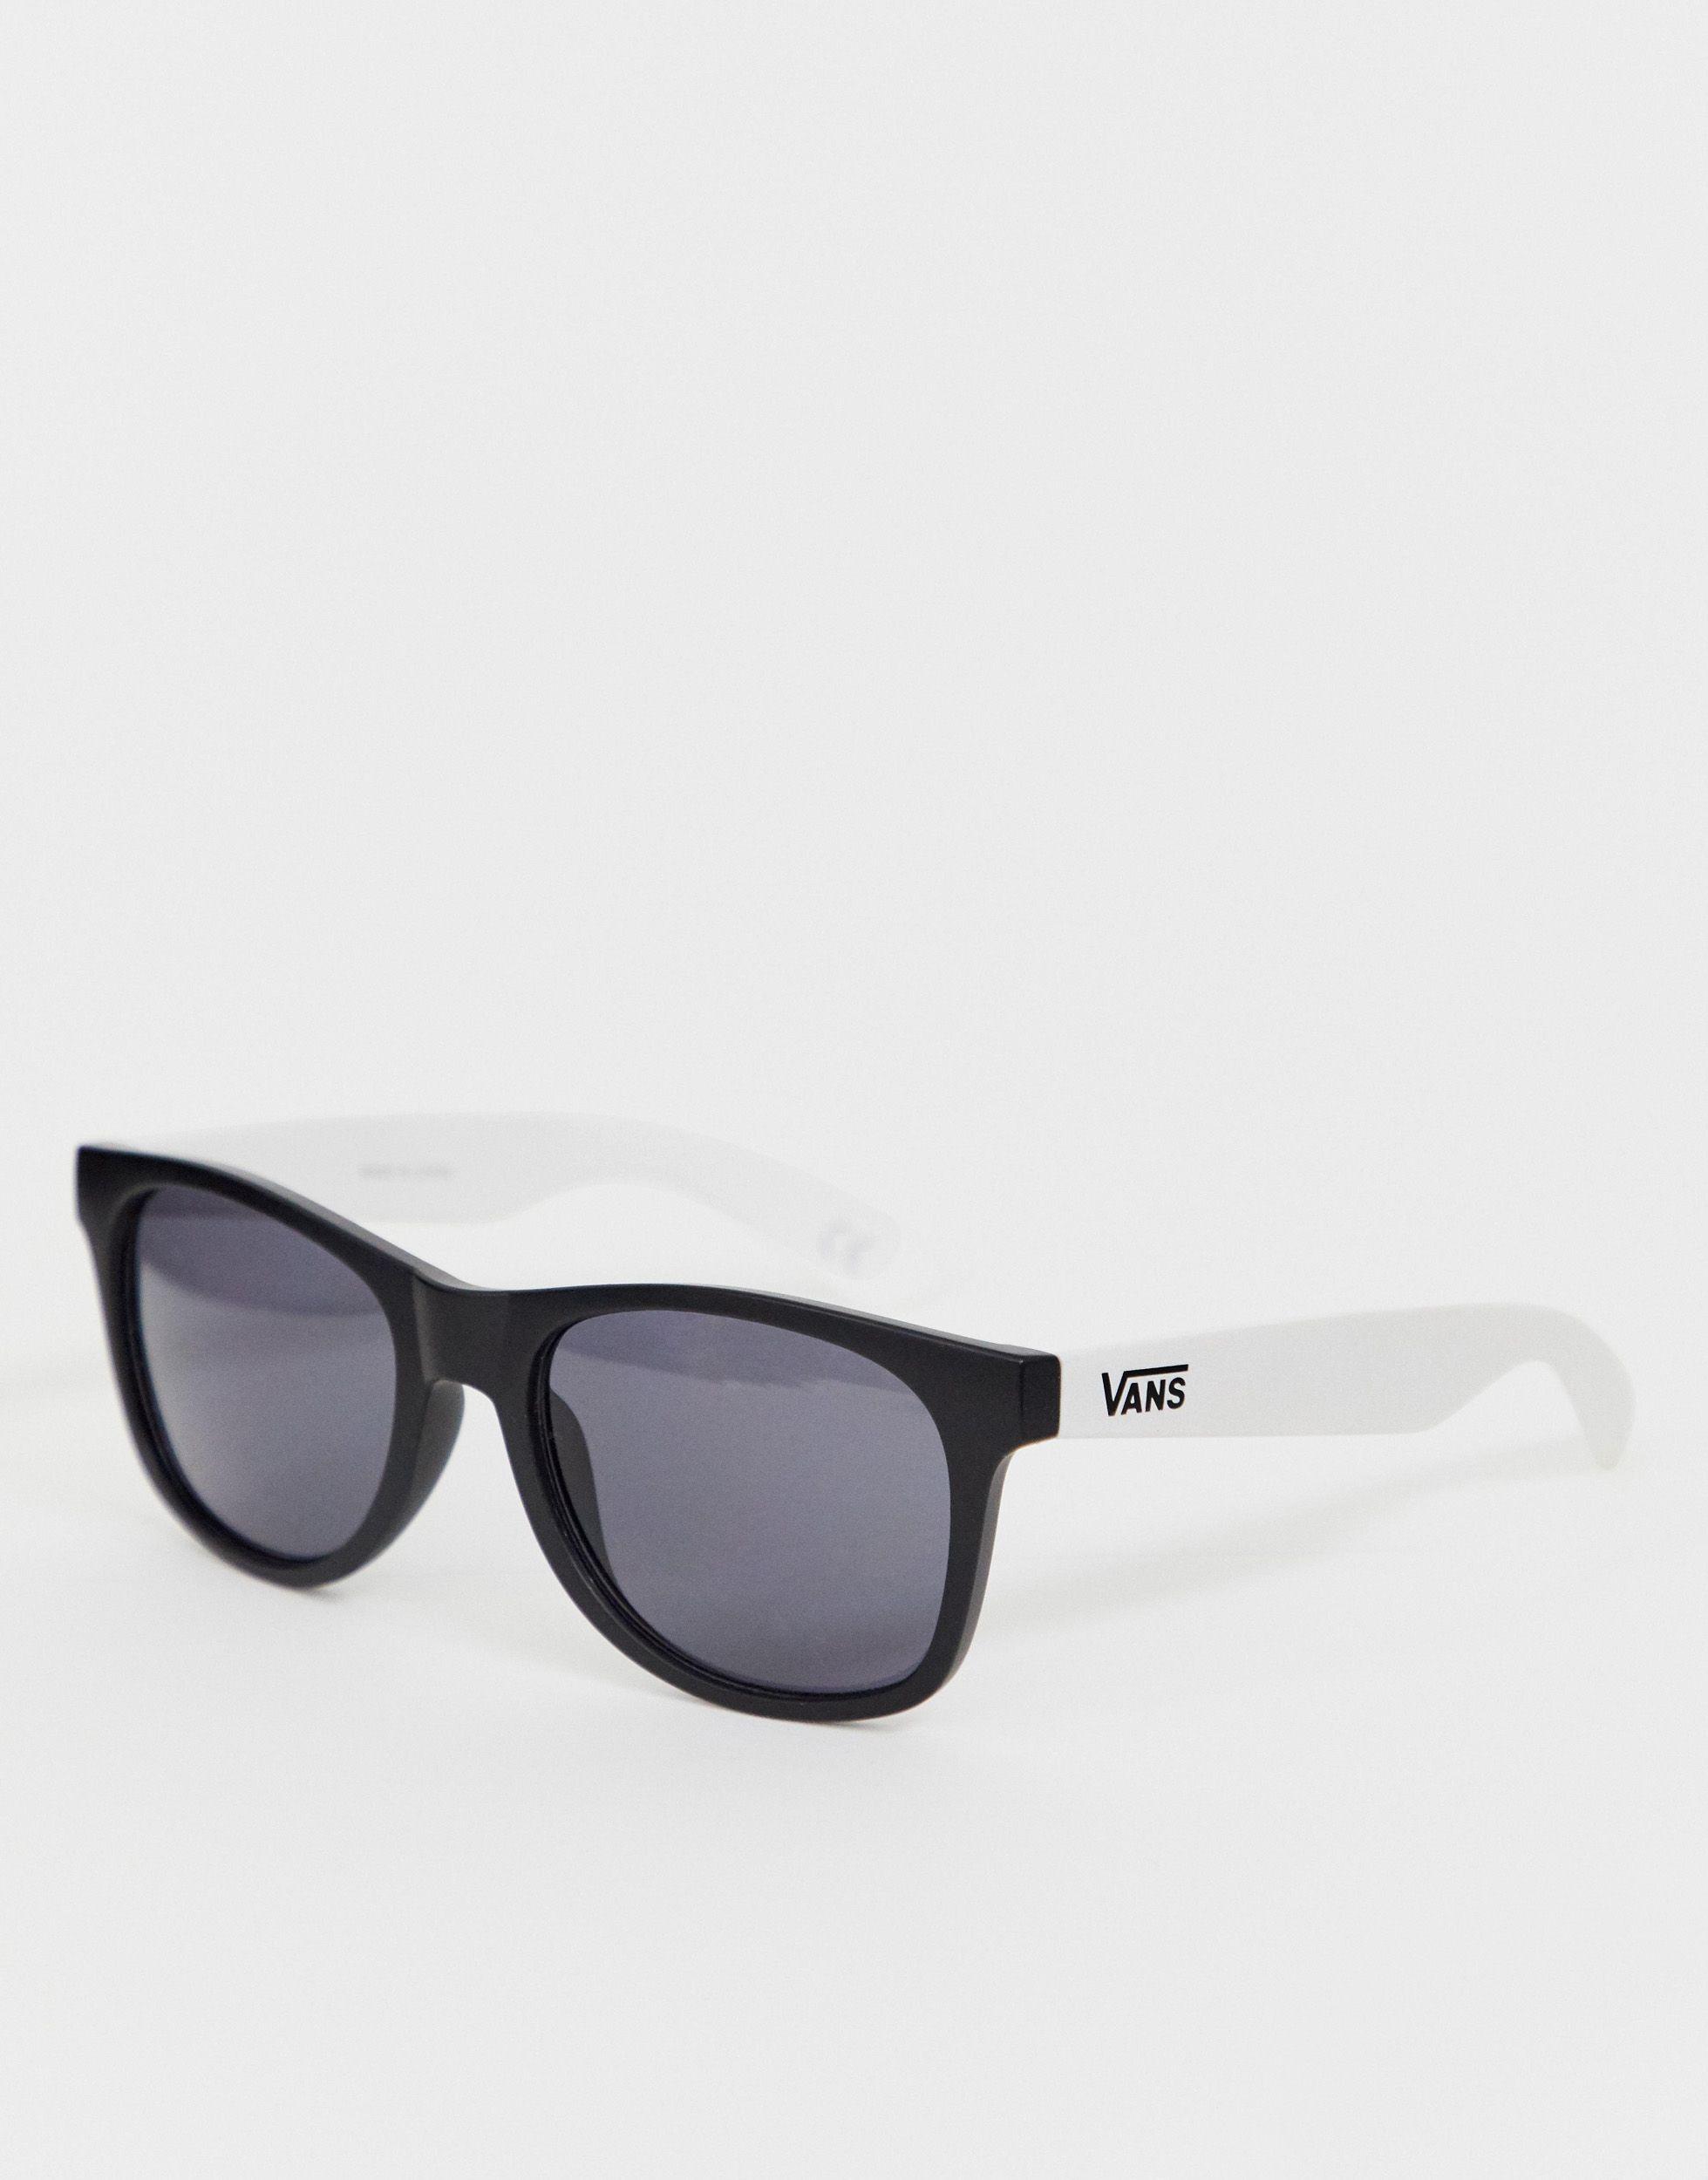 Vans Rubber Spicoli 4 Sunglasses in Black (White) for Men - Save 50% - Lyst